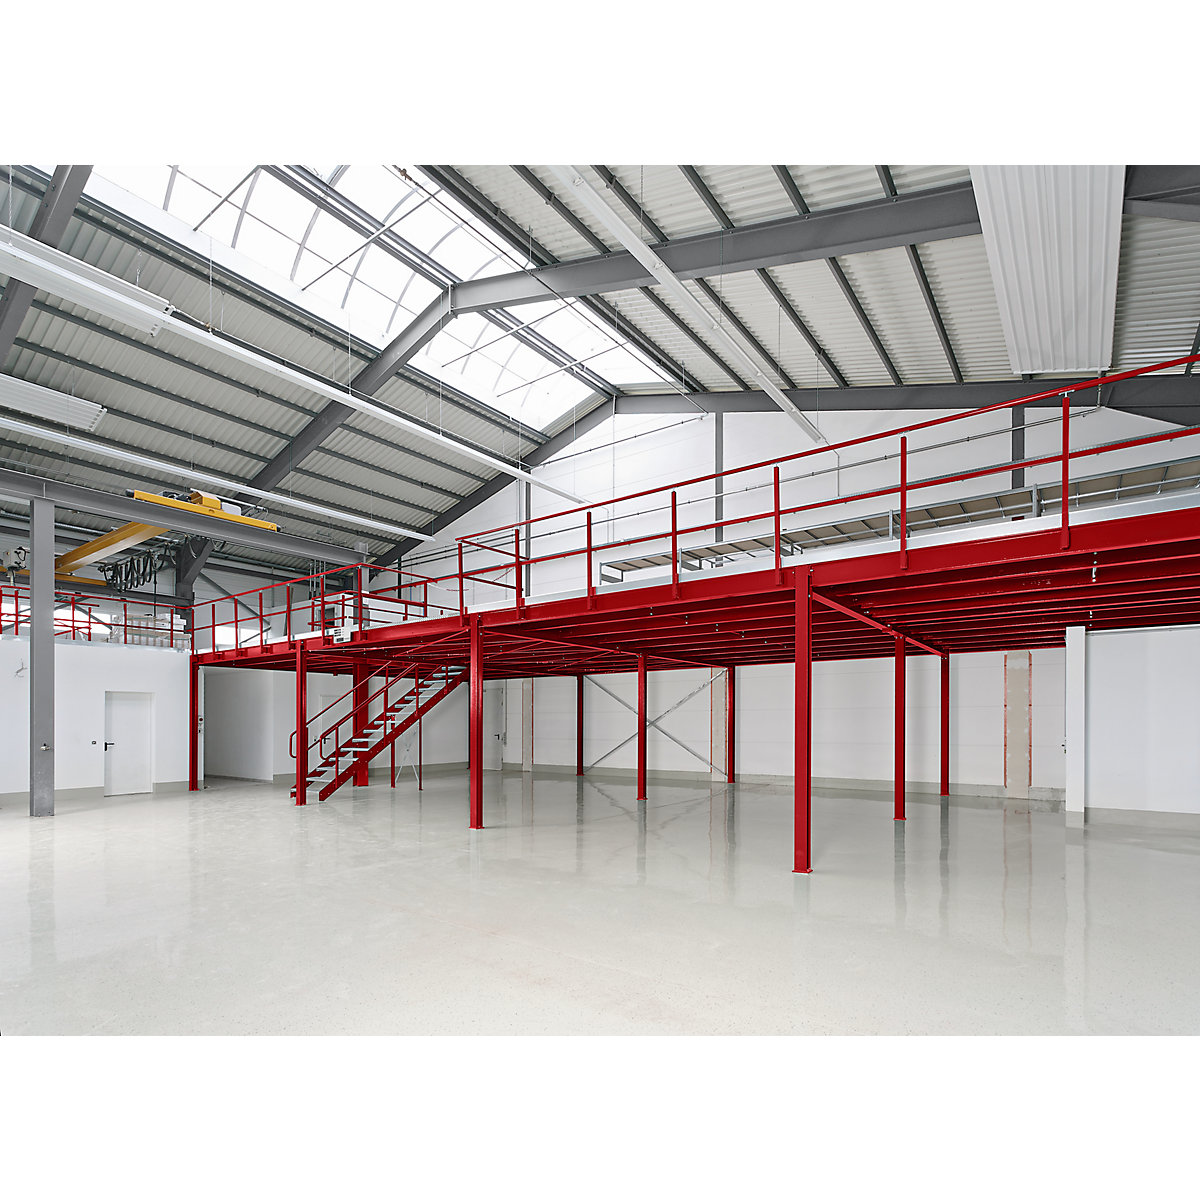 Raktári emelvény, alapmező, felületi terhelhetőség 350 kg/m², oszloprács 5000 x 3000 mm